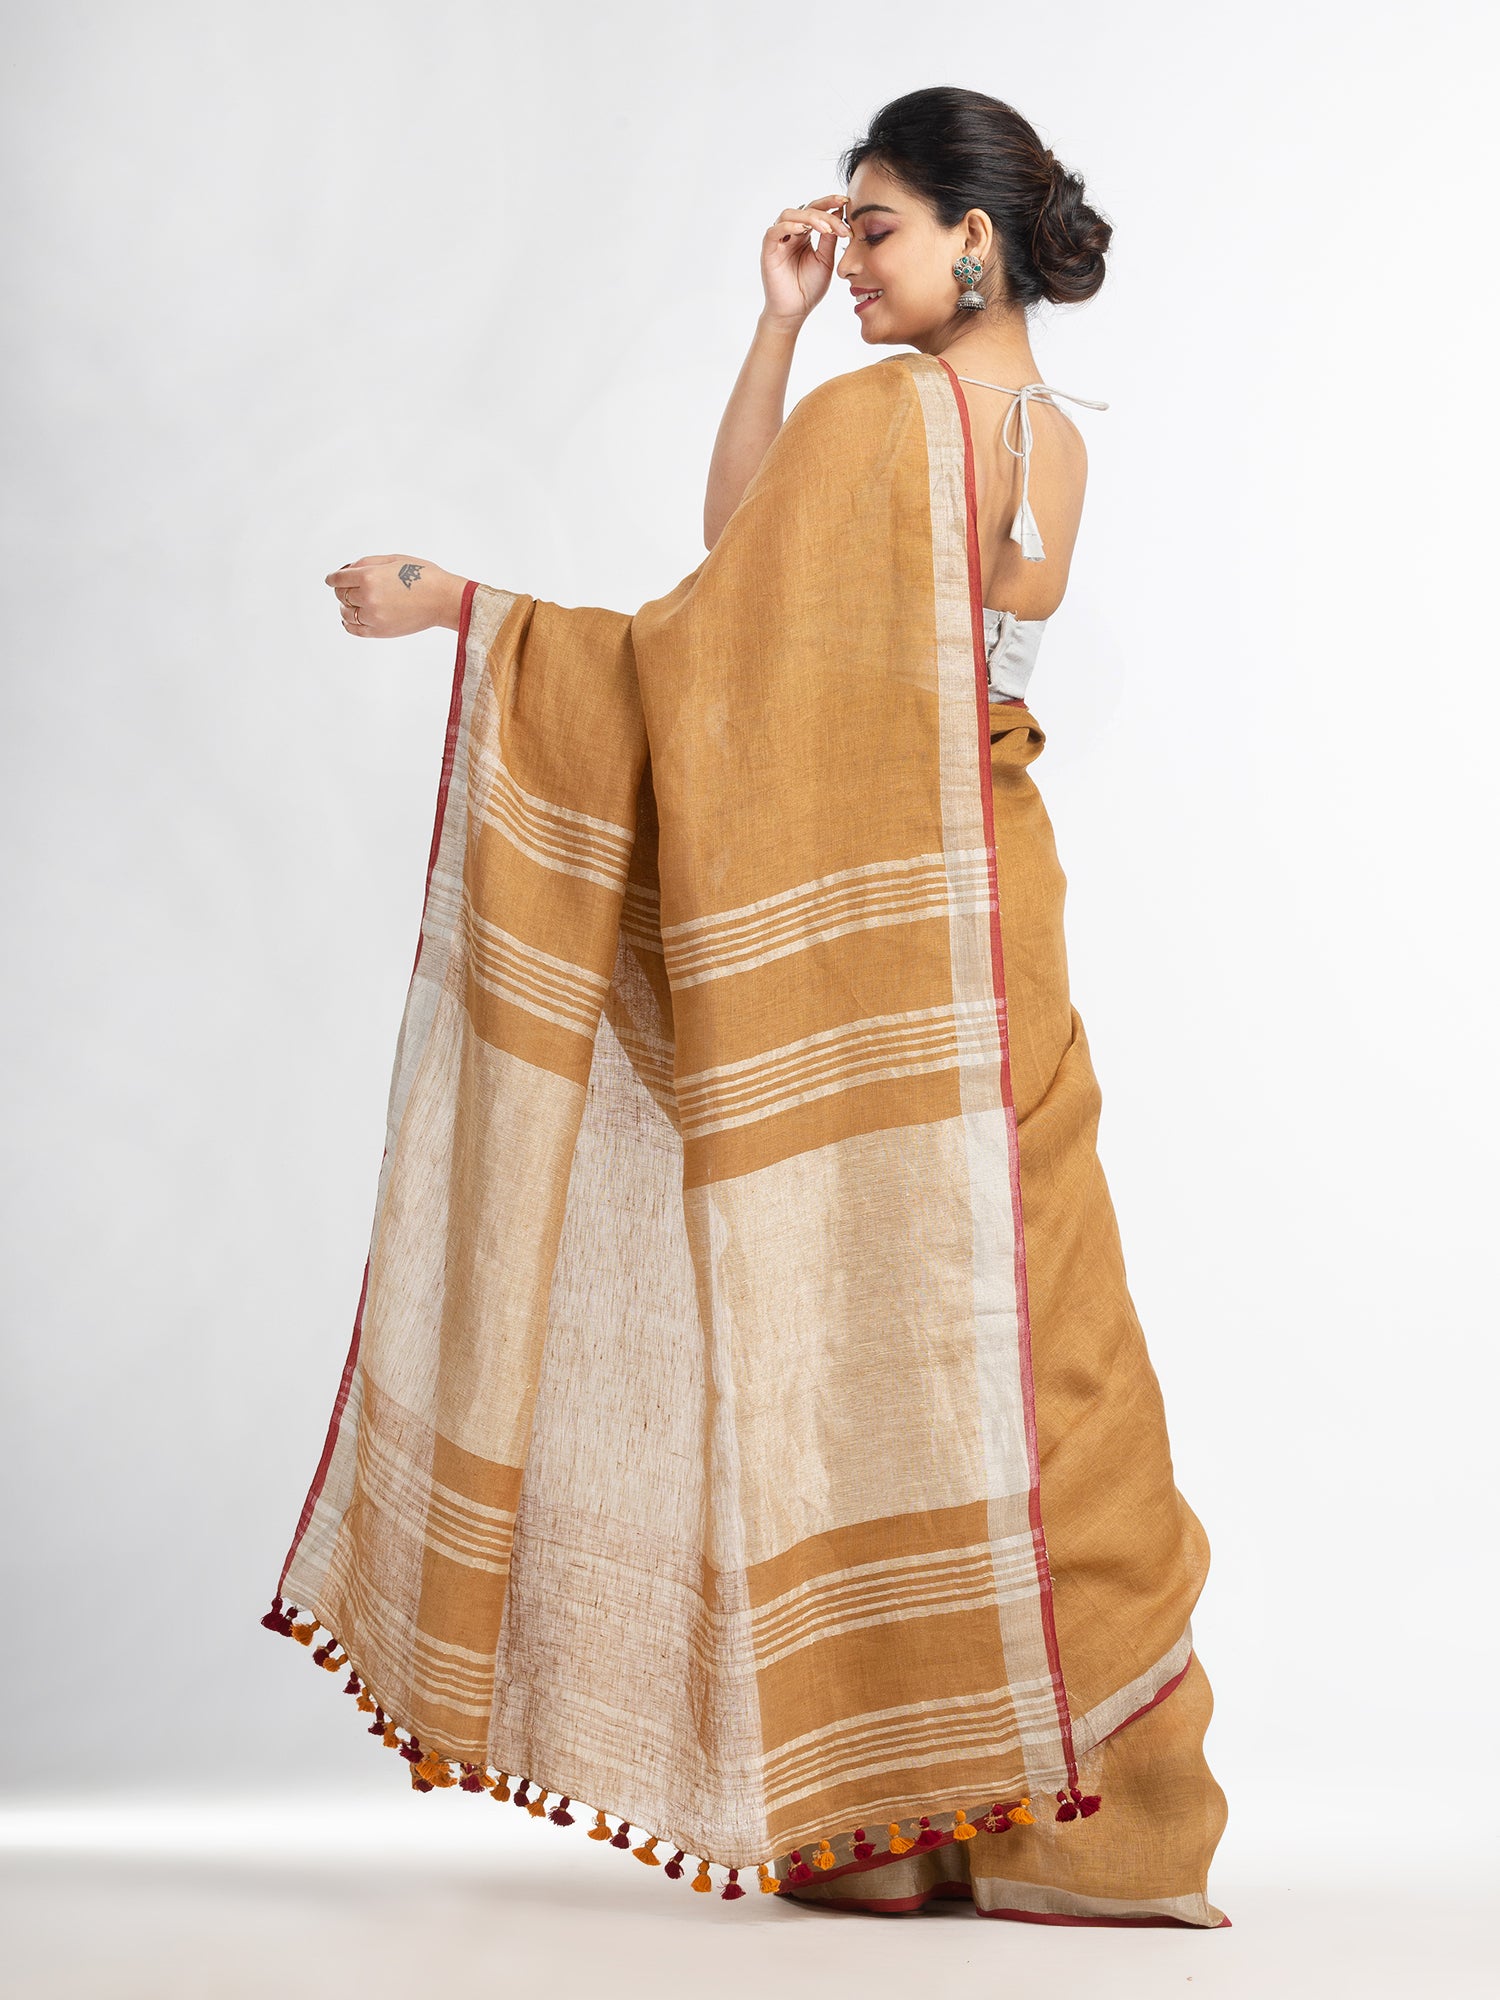 Women's saffron with silver zari pallu in silver zari border handwoven linen saree - Angoshobha